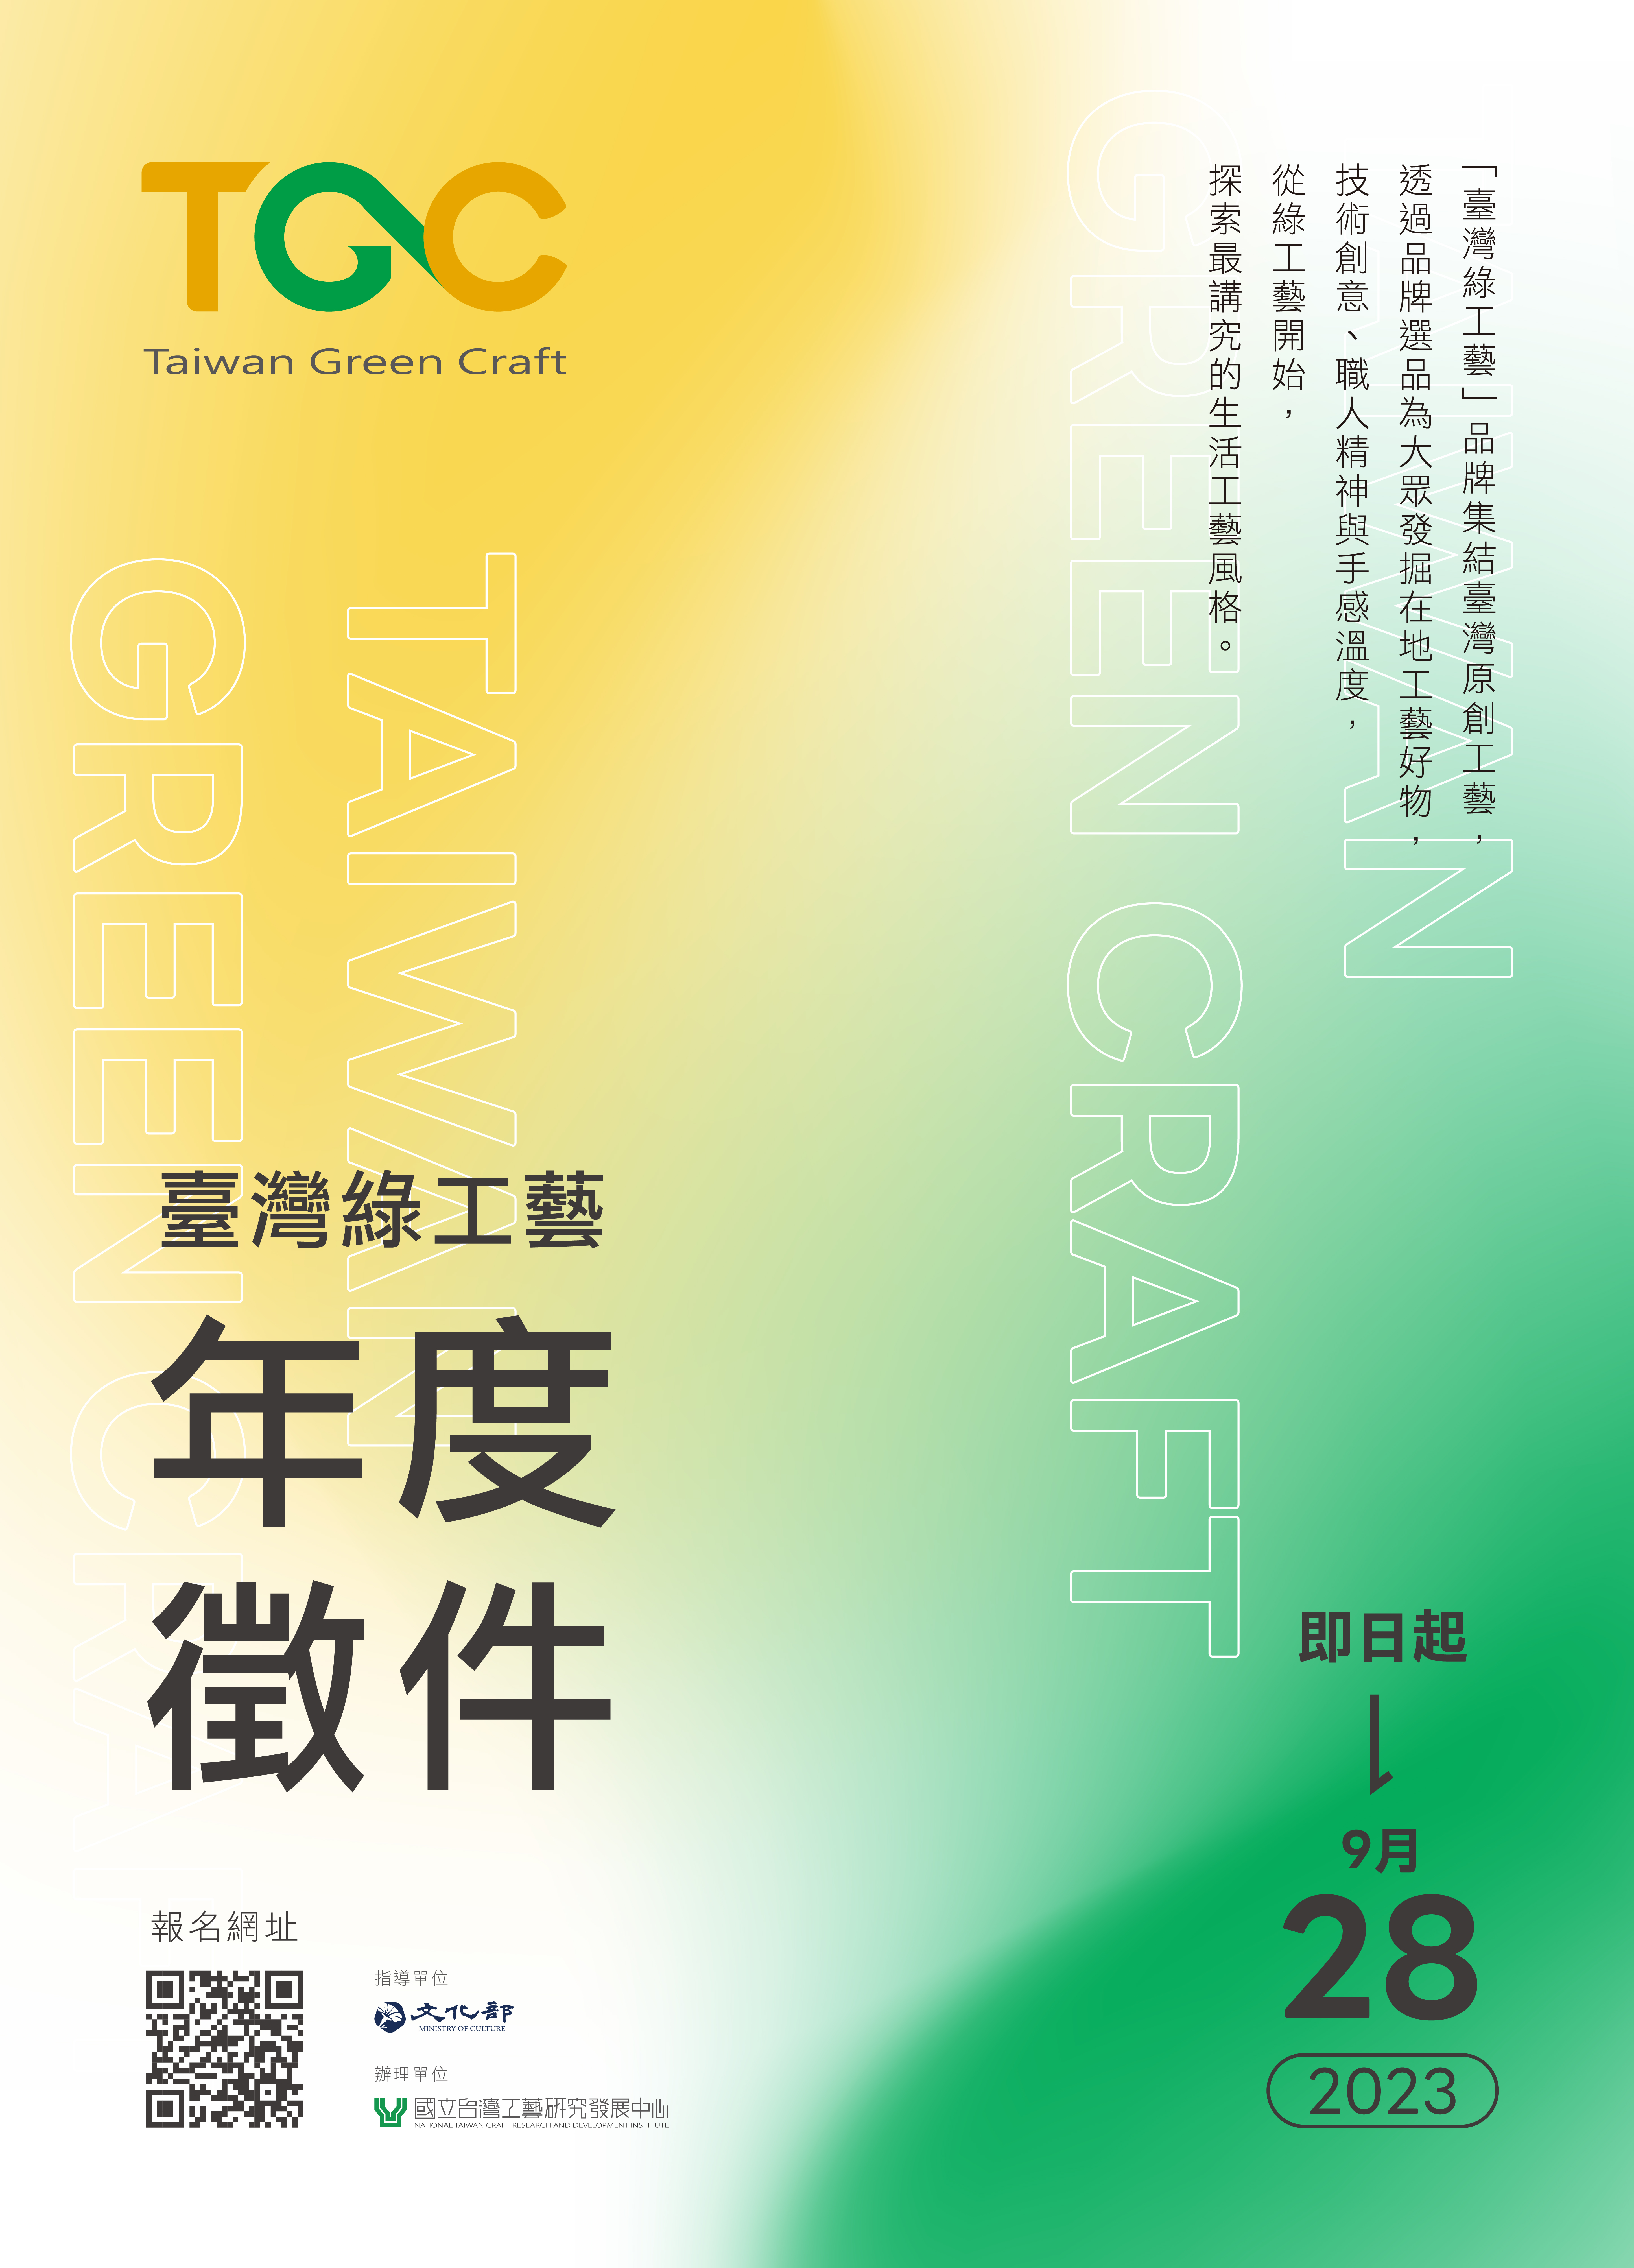 臺灣綠工藝Taiwan Green Craft 品牌 徵件海報